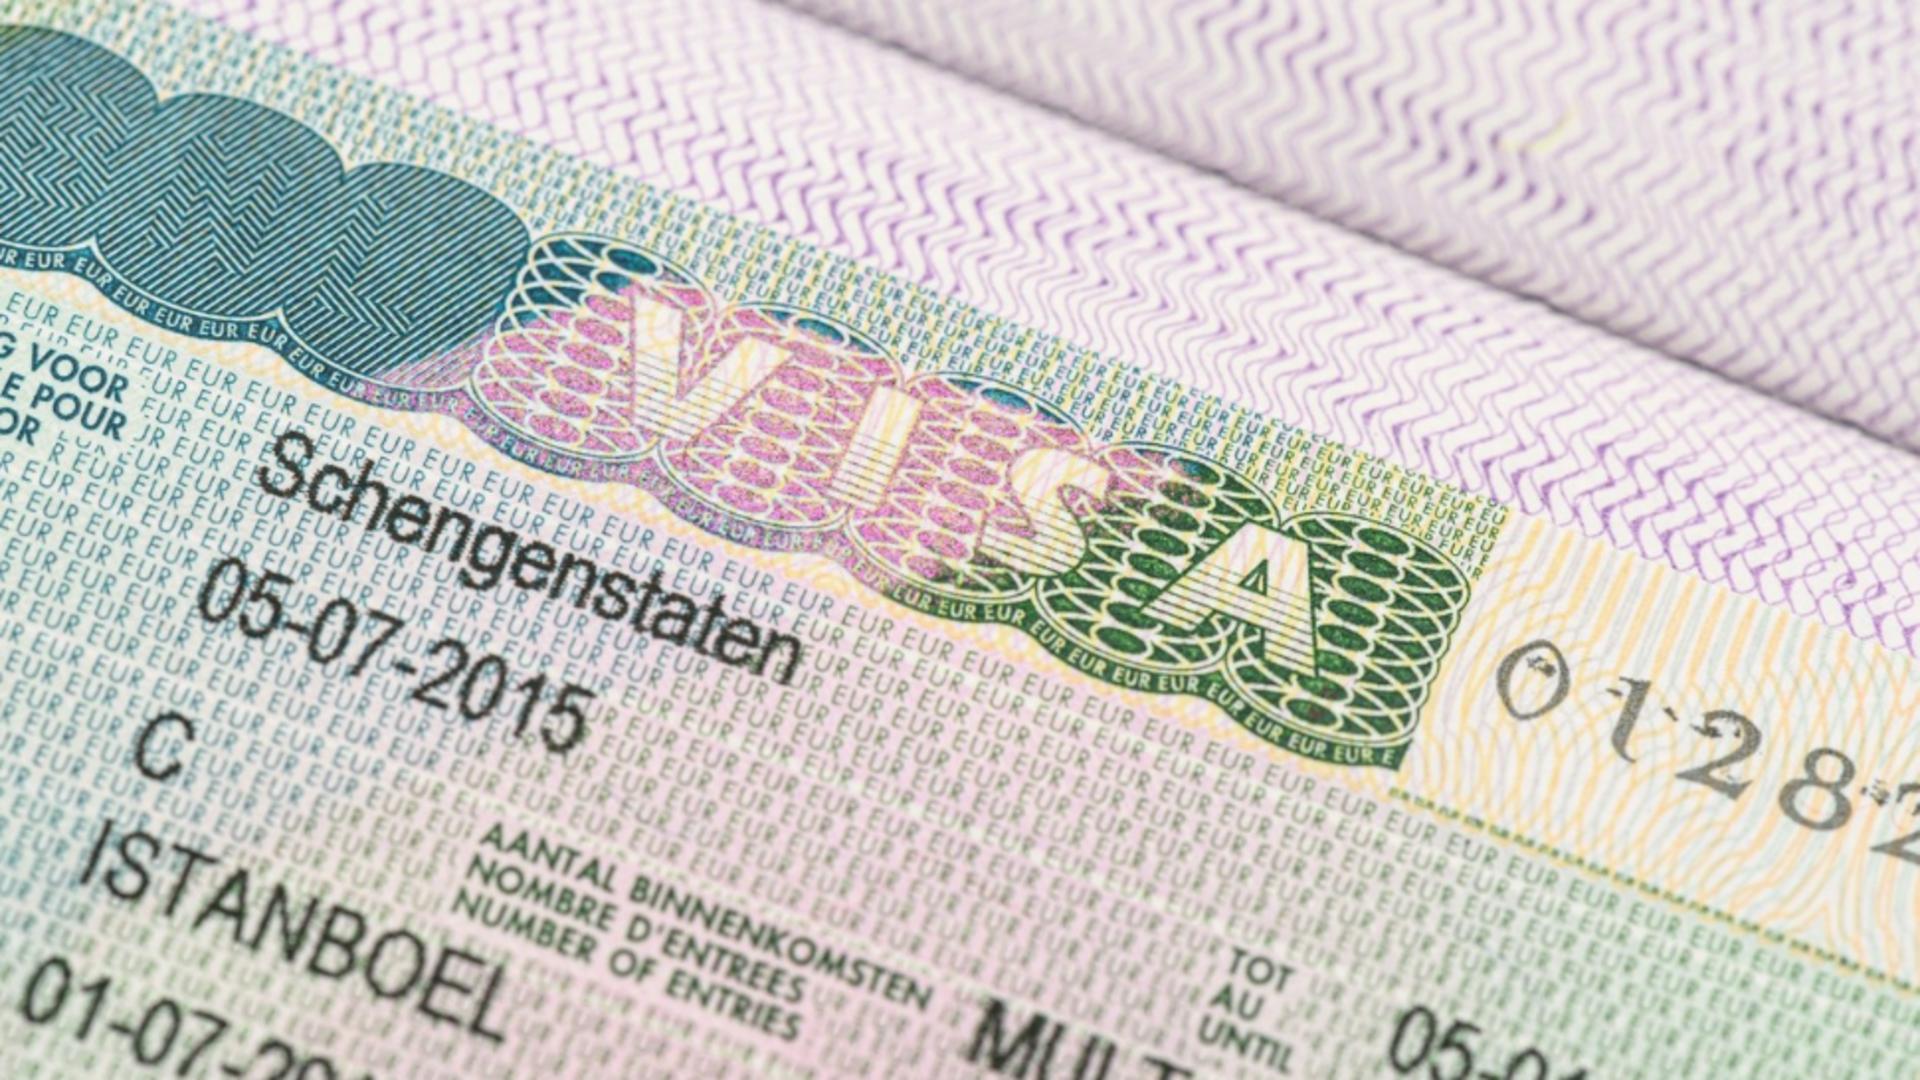 Parlamentul European introduce vizele electronice Schengen. România și Bulgaria, obligate să le emită